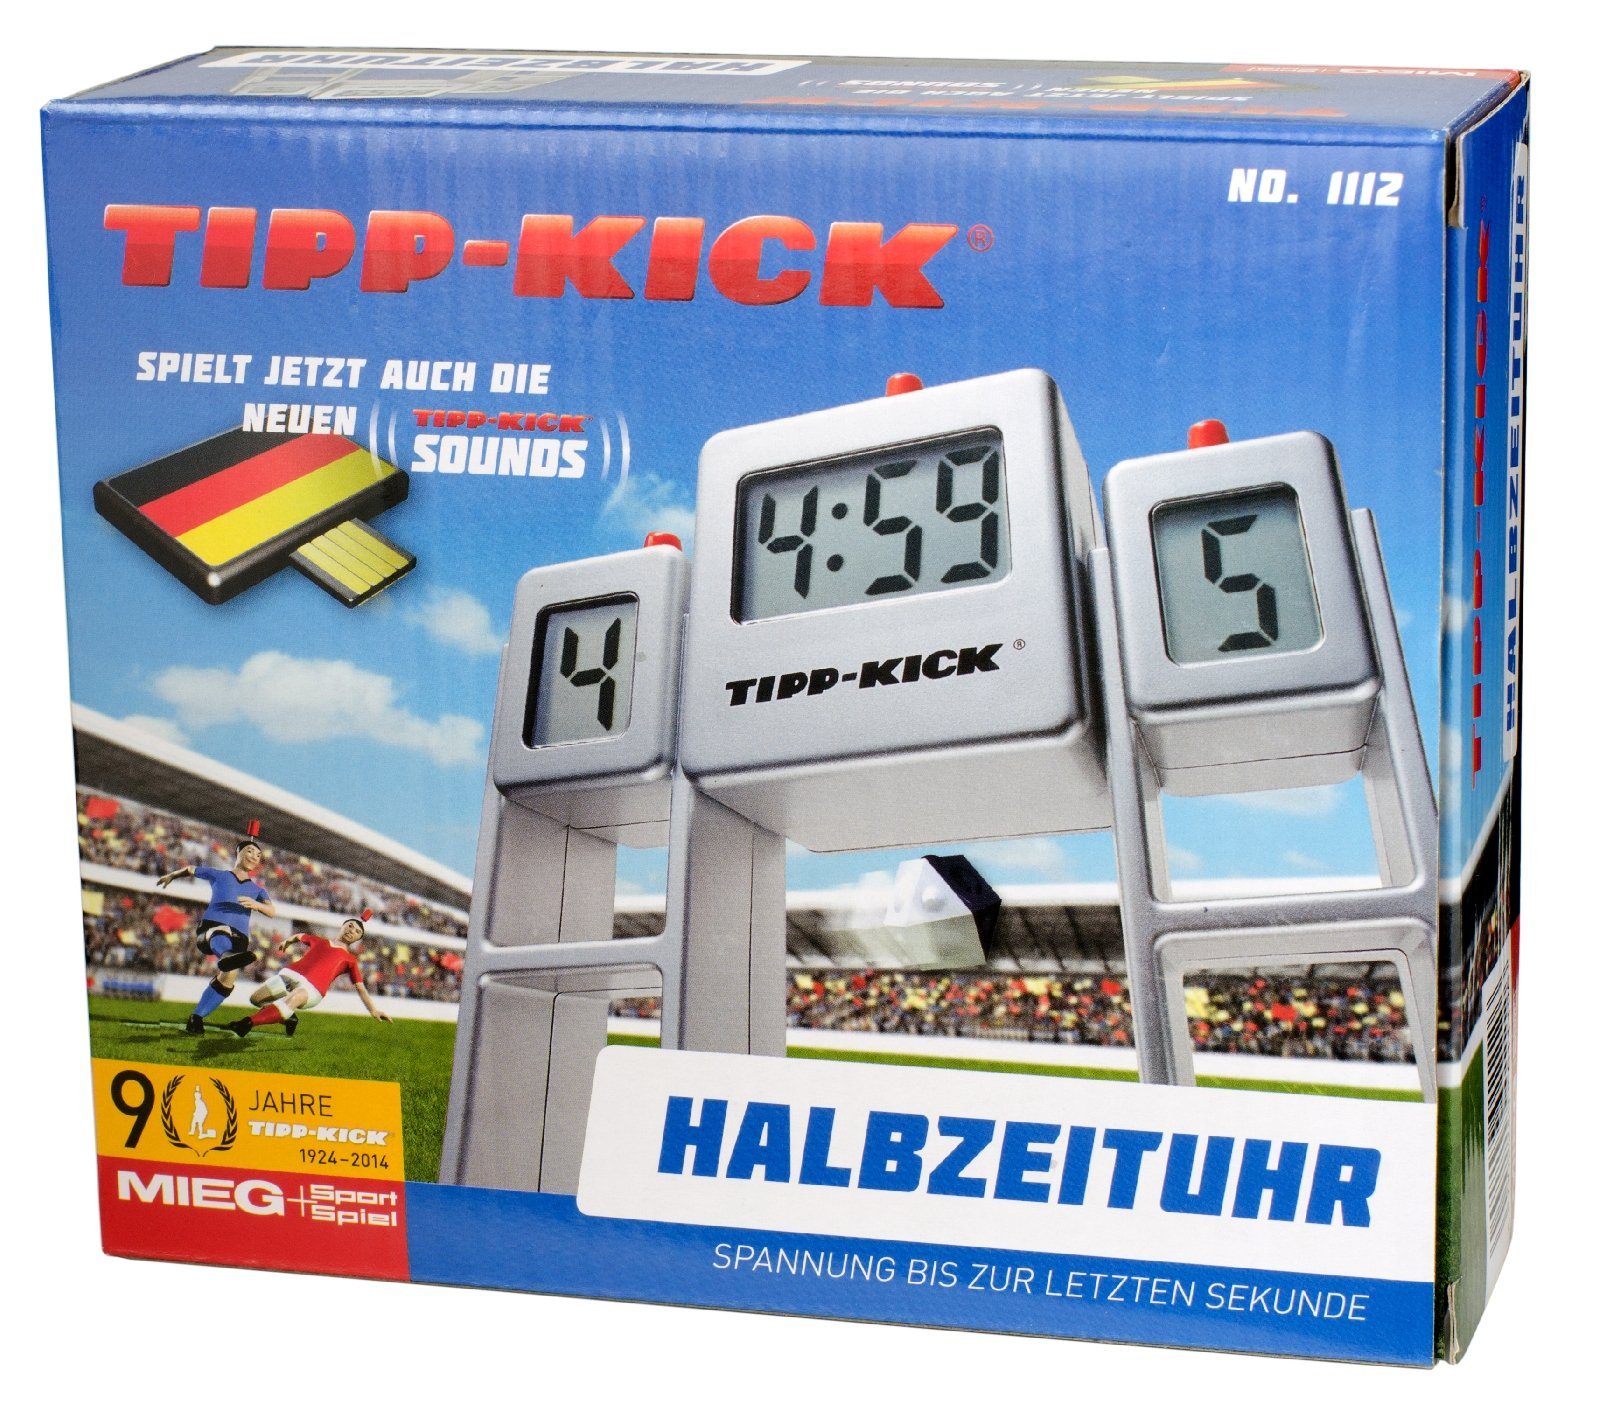 Tip Uhr Sound Spiel Zeitanzeige Match Tipp-Kick Kick Stoppuhr Halbzeituhr Tischfußballspiel